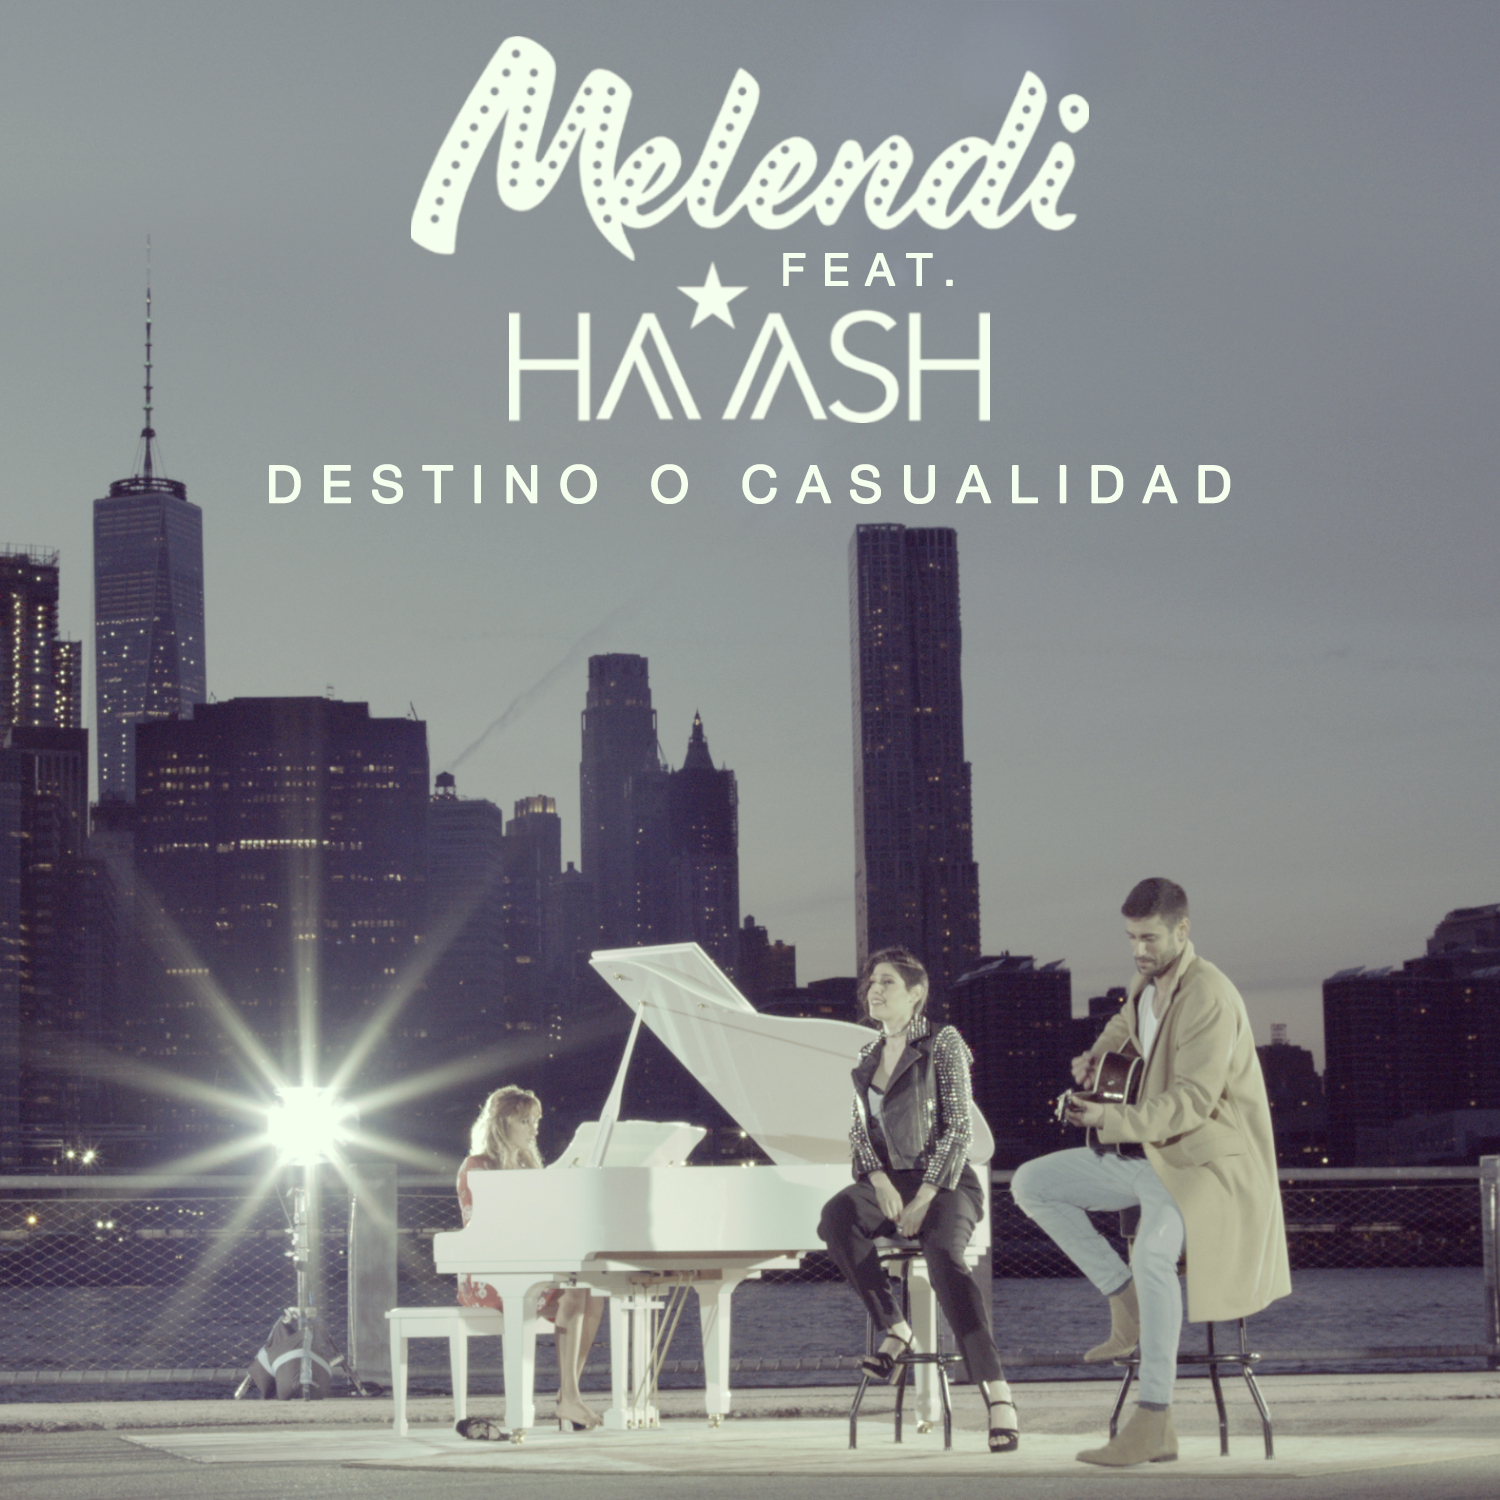 Melendi publica el “making of” de “Destino o casualidad” feat. Ha*Ash